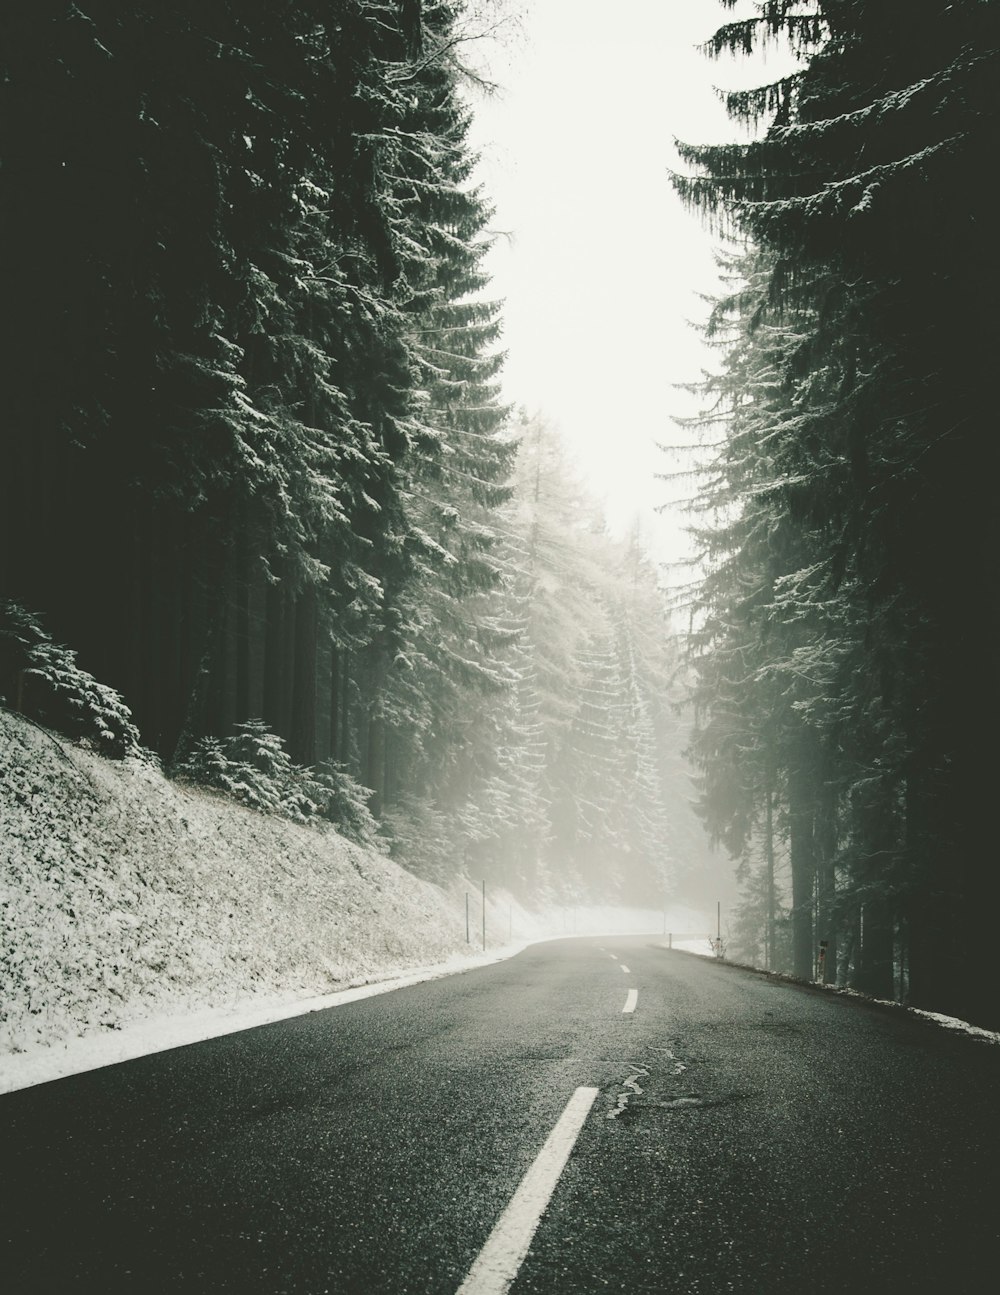 strada nebbiosa vicino agli alberi